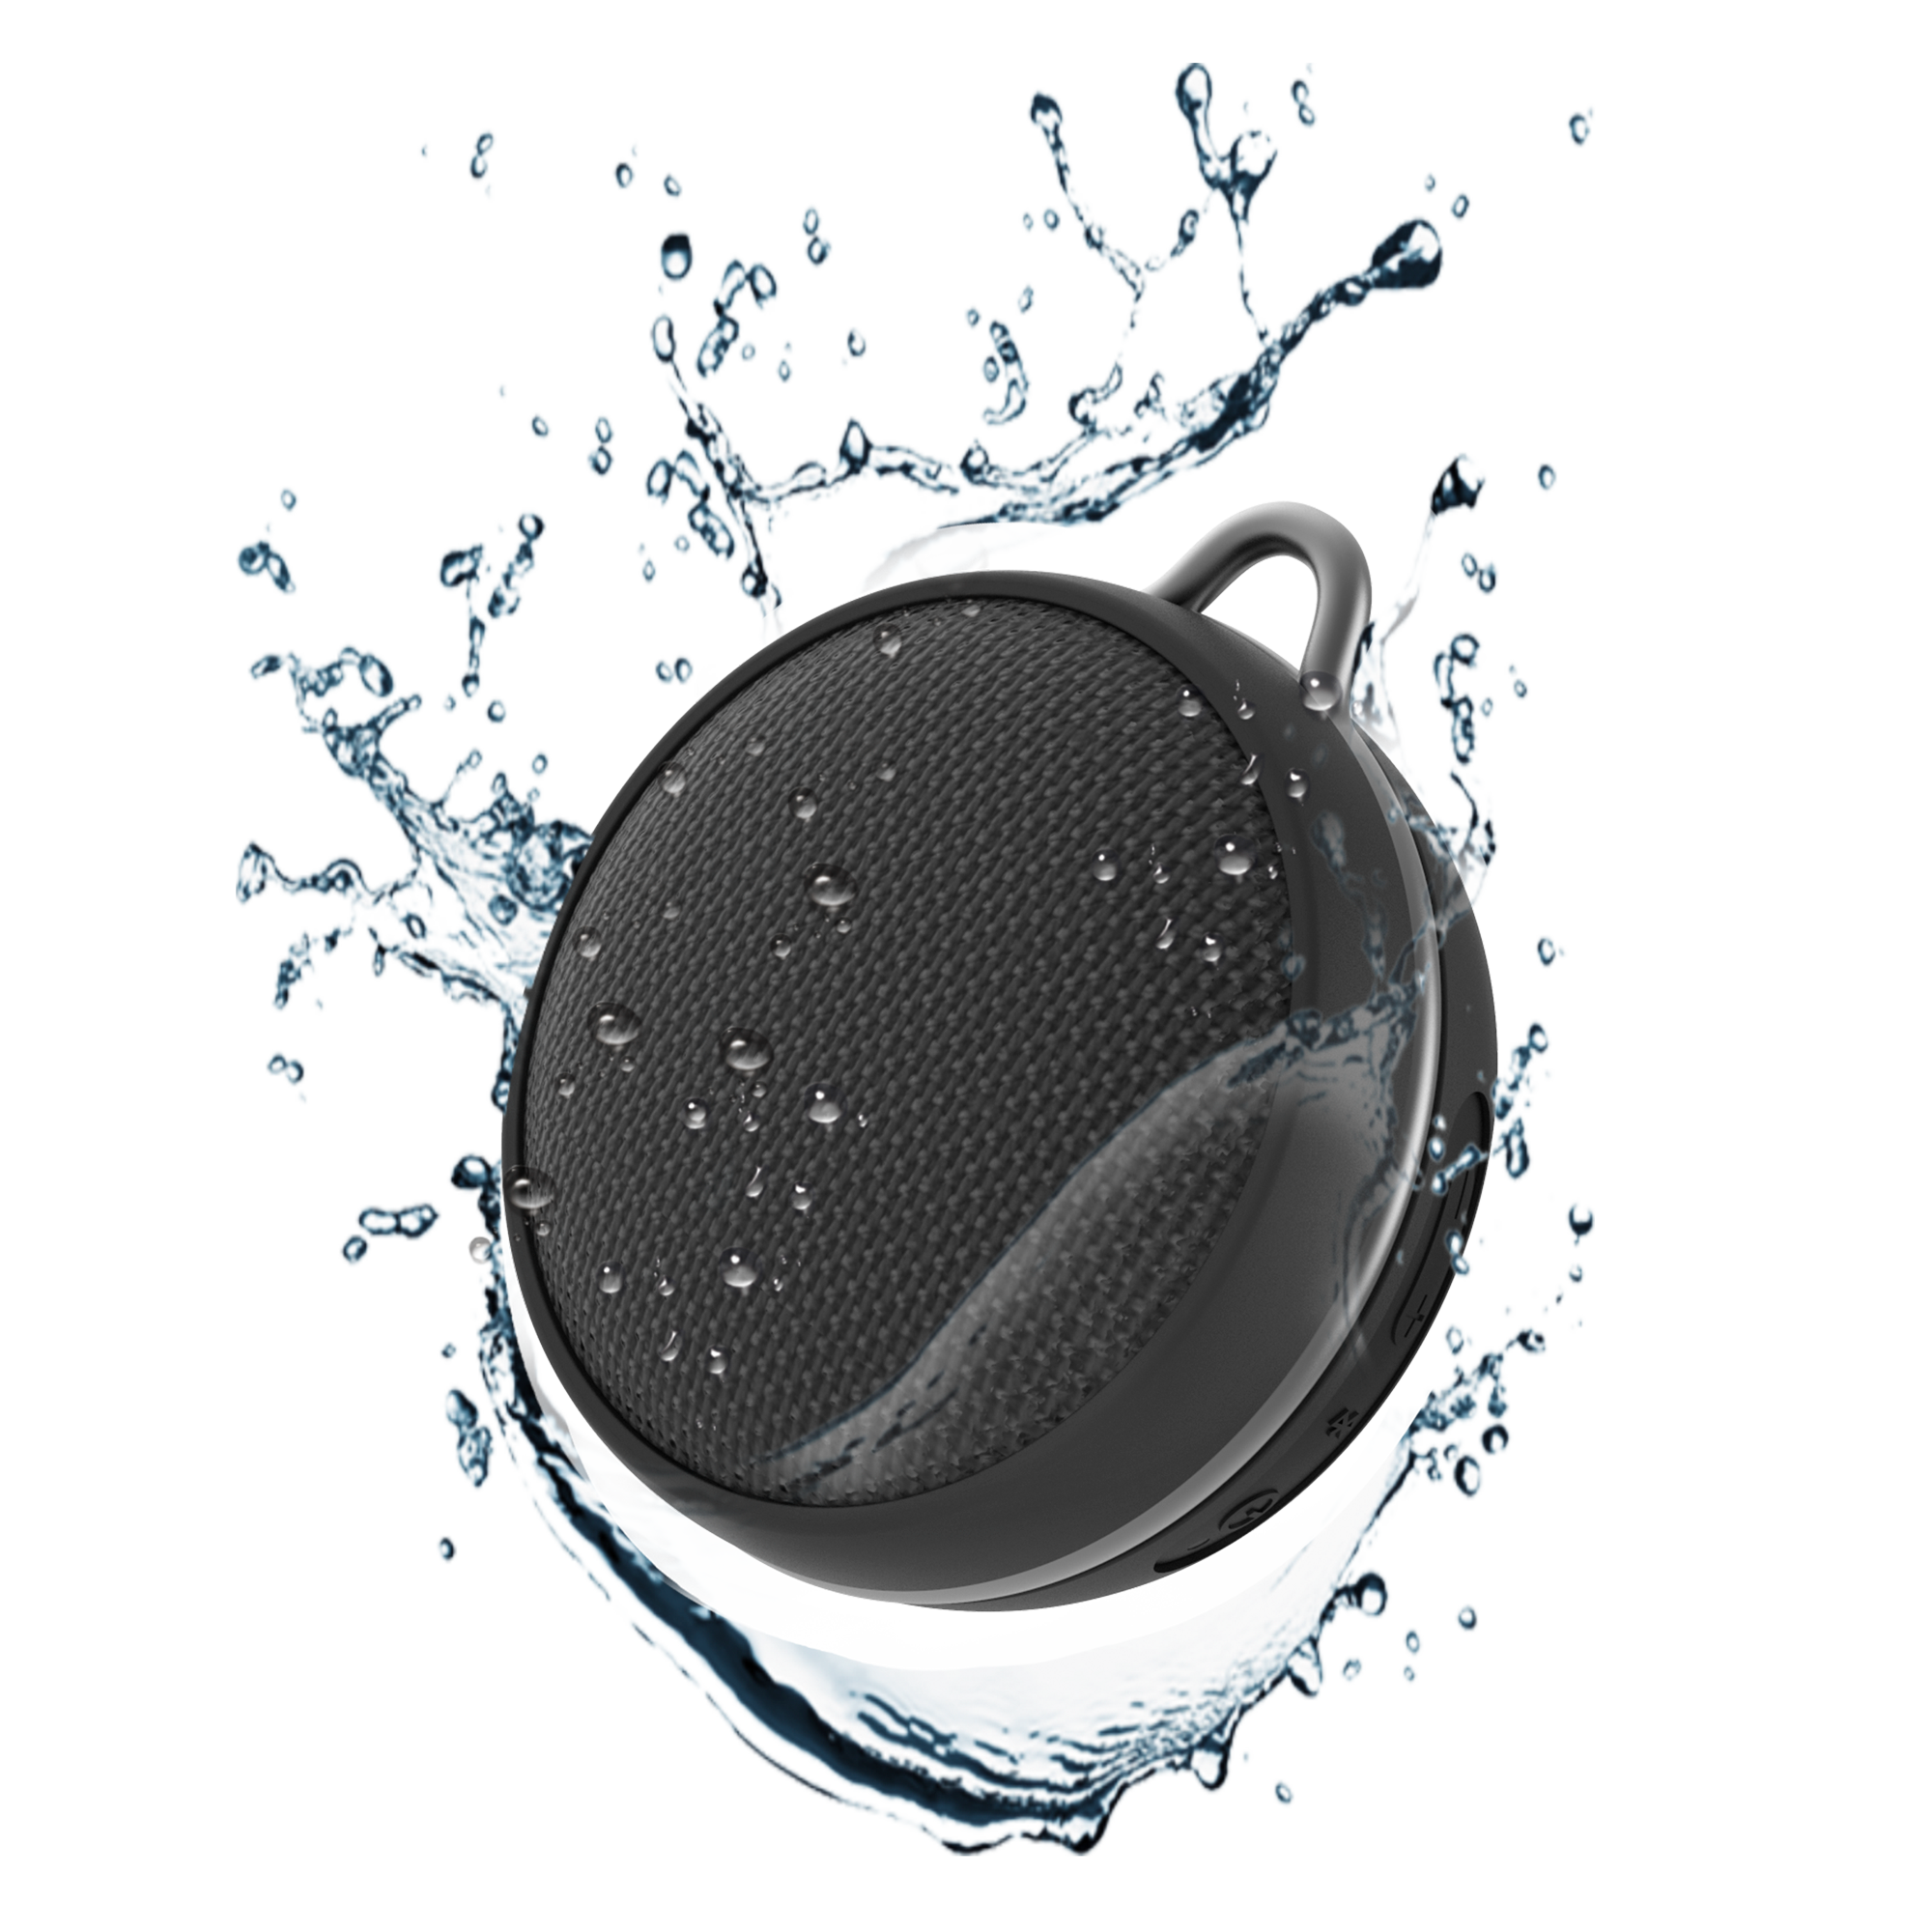 Mojo IPX7 Waterproof Wireless Speaker